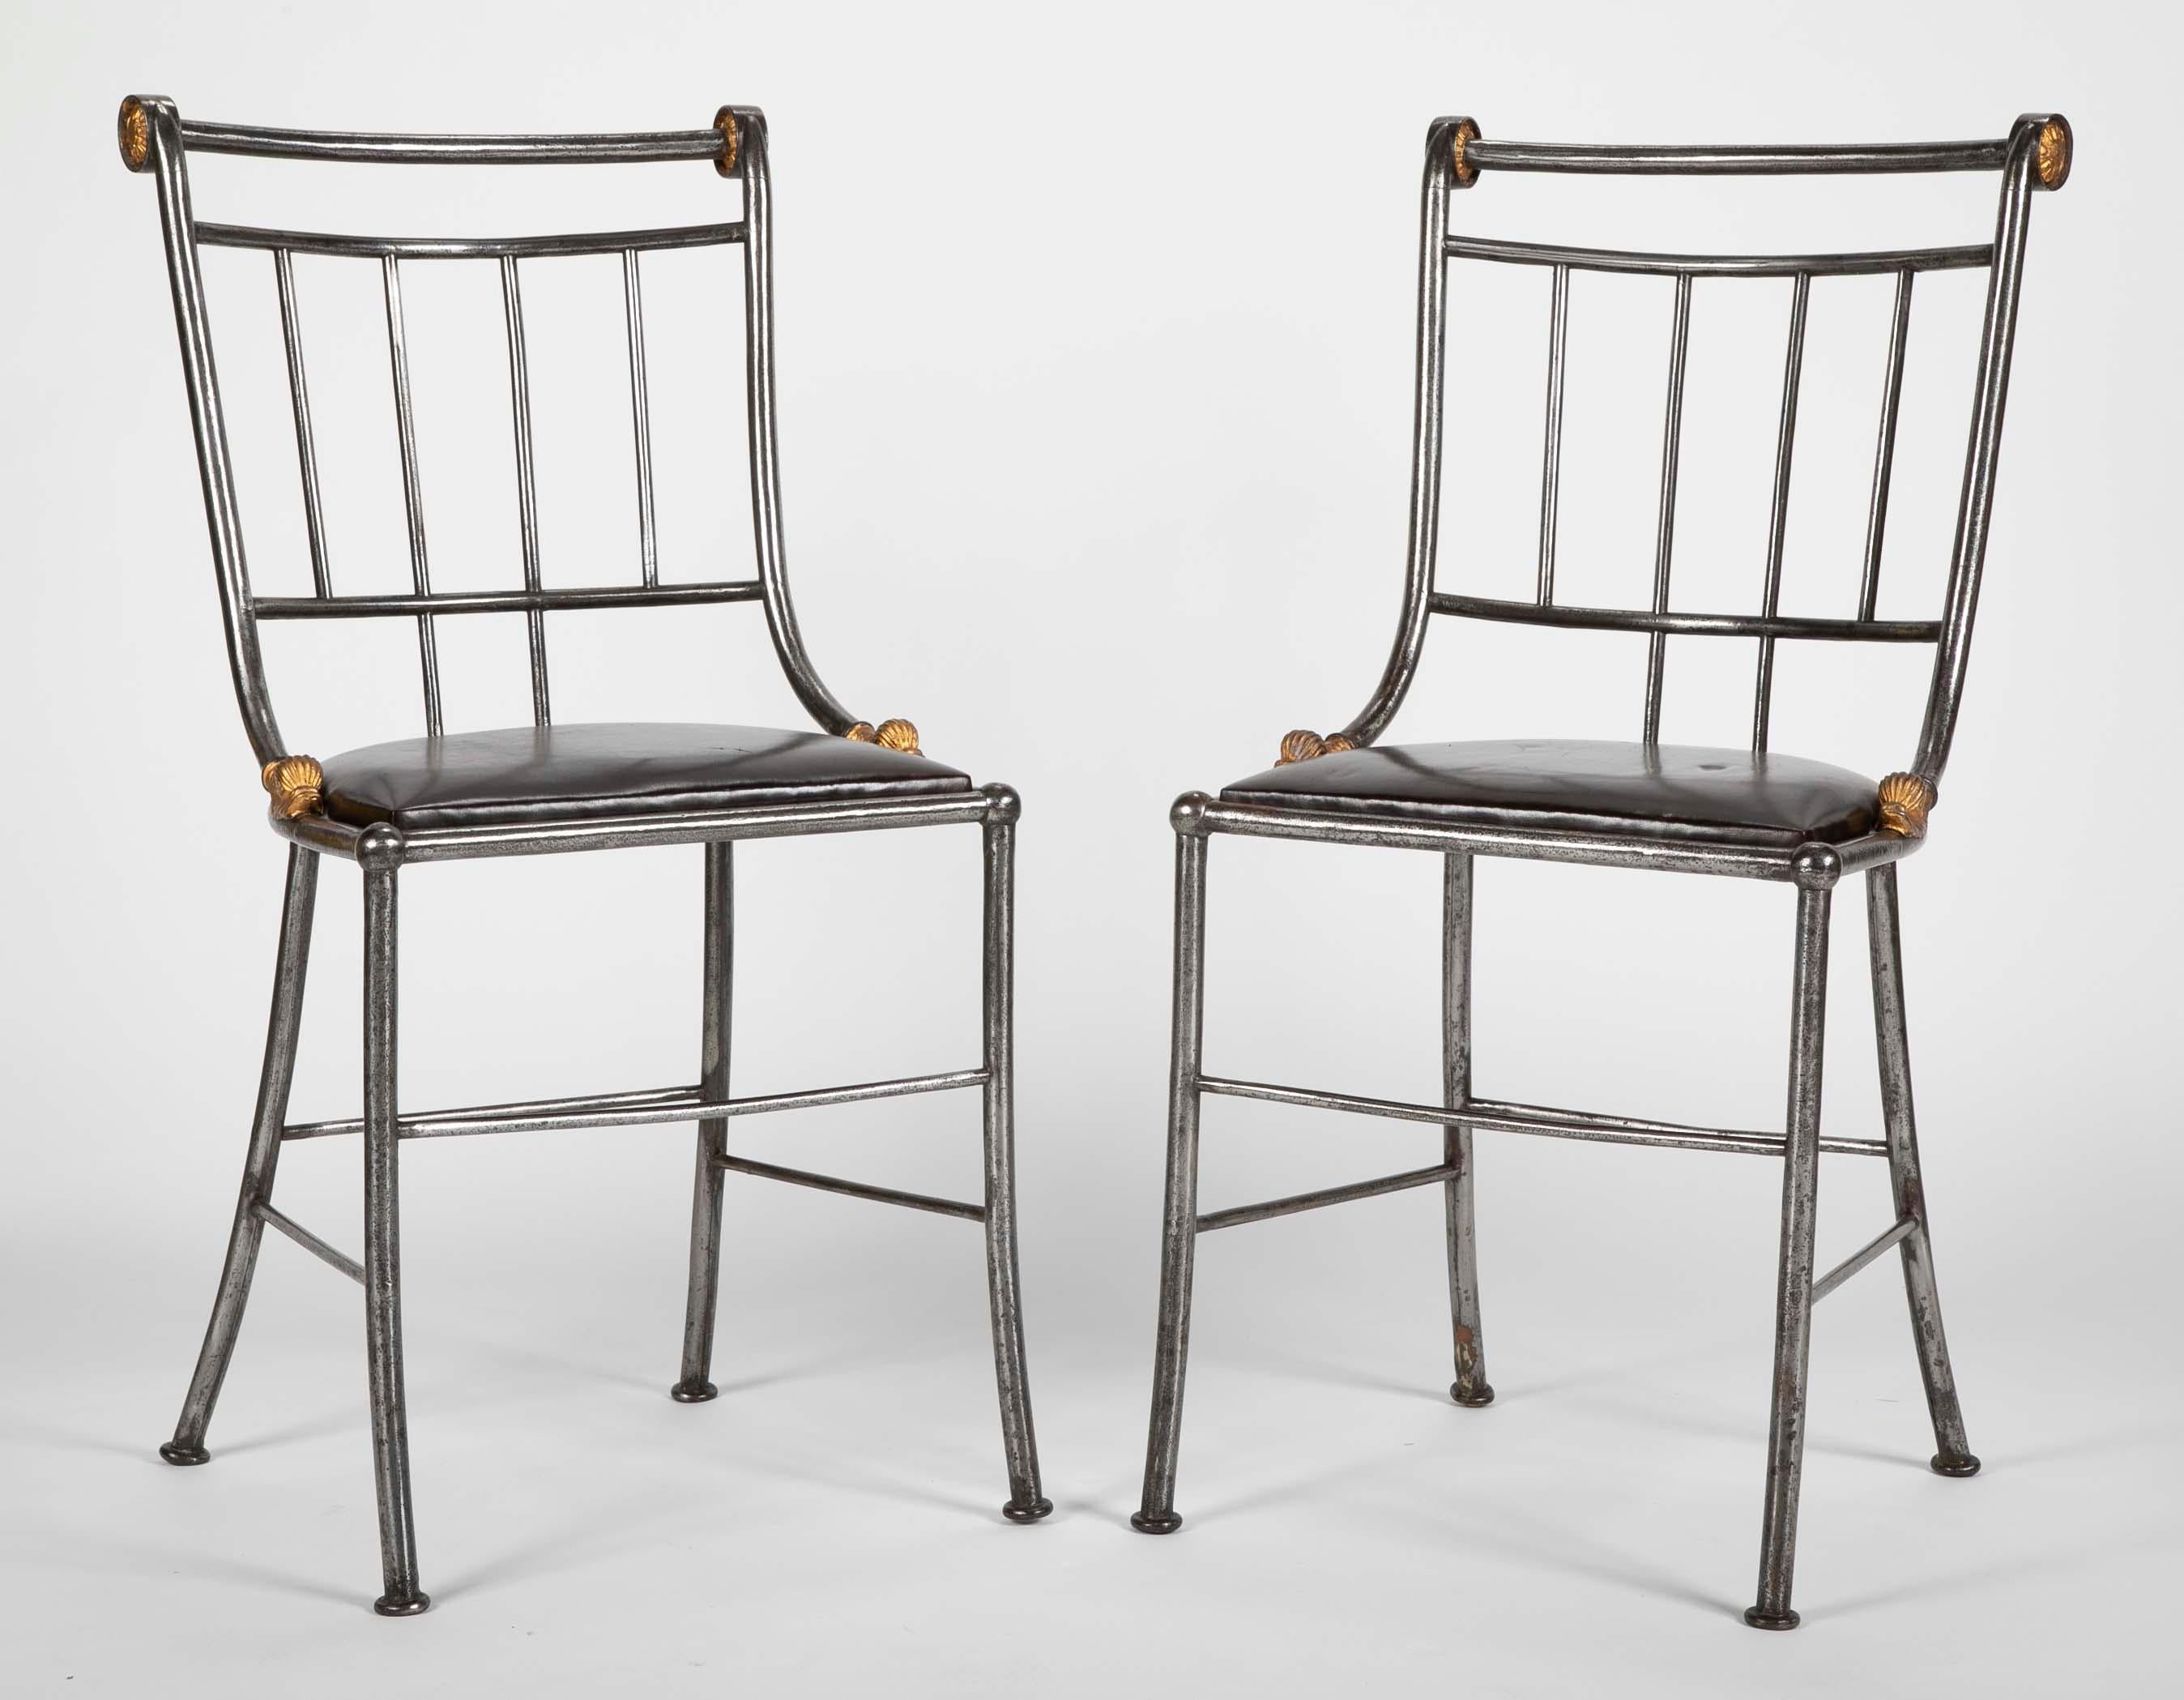 Ein attraktives Paar Beistellstühle aus Stahl und vergoldetem Metall mit schwarzen Ledersitzen. Verkauft in Paaren. Vier verfügbar.